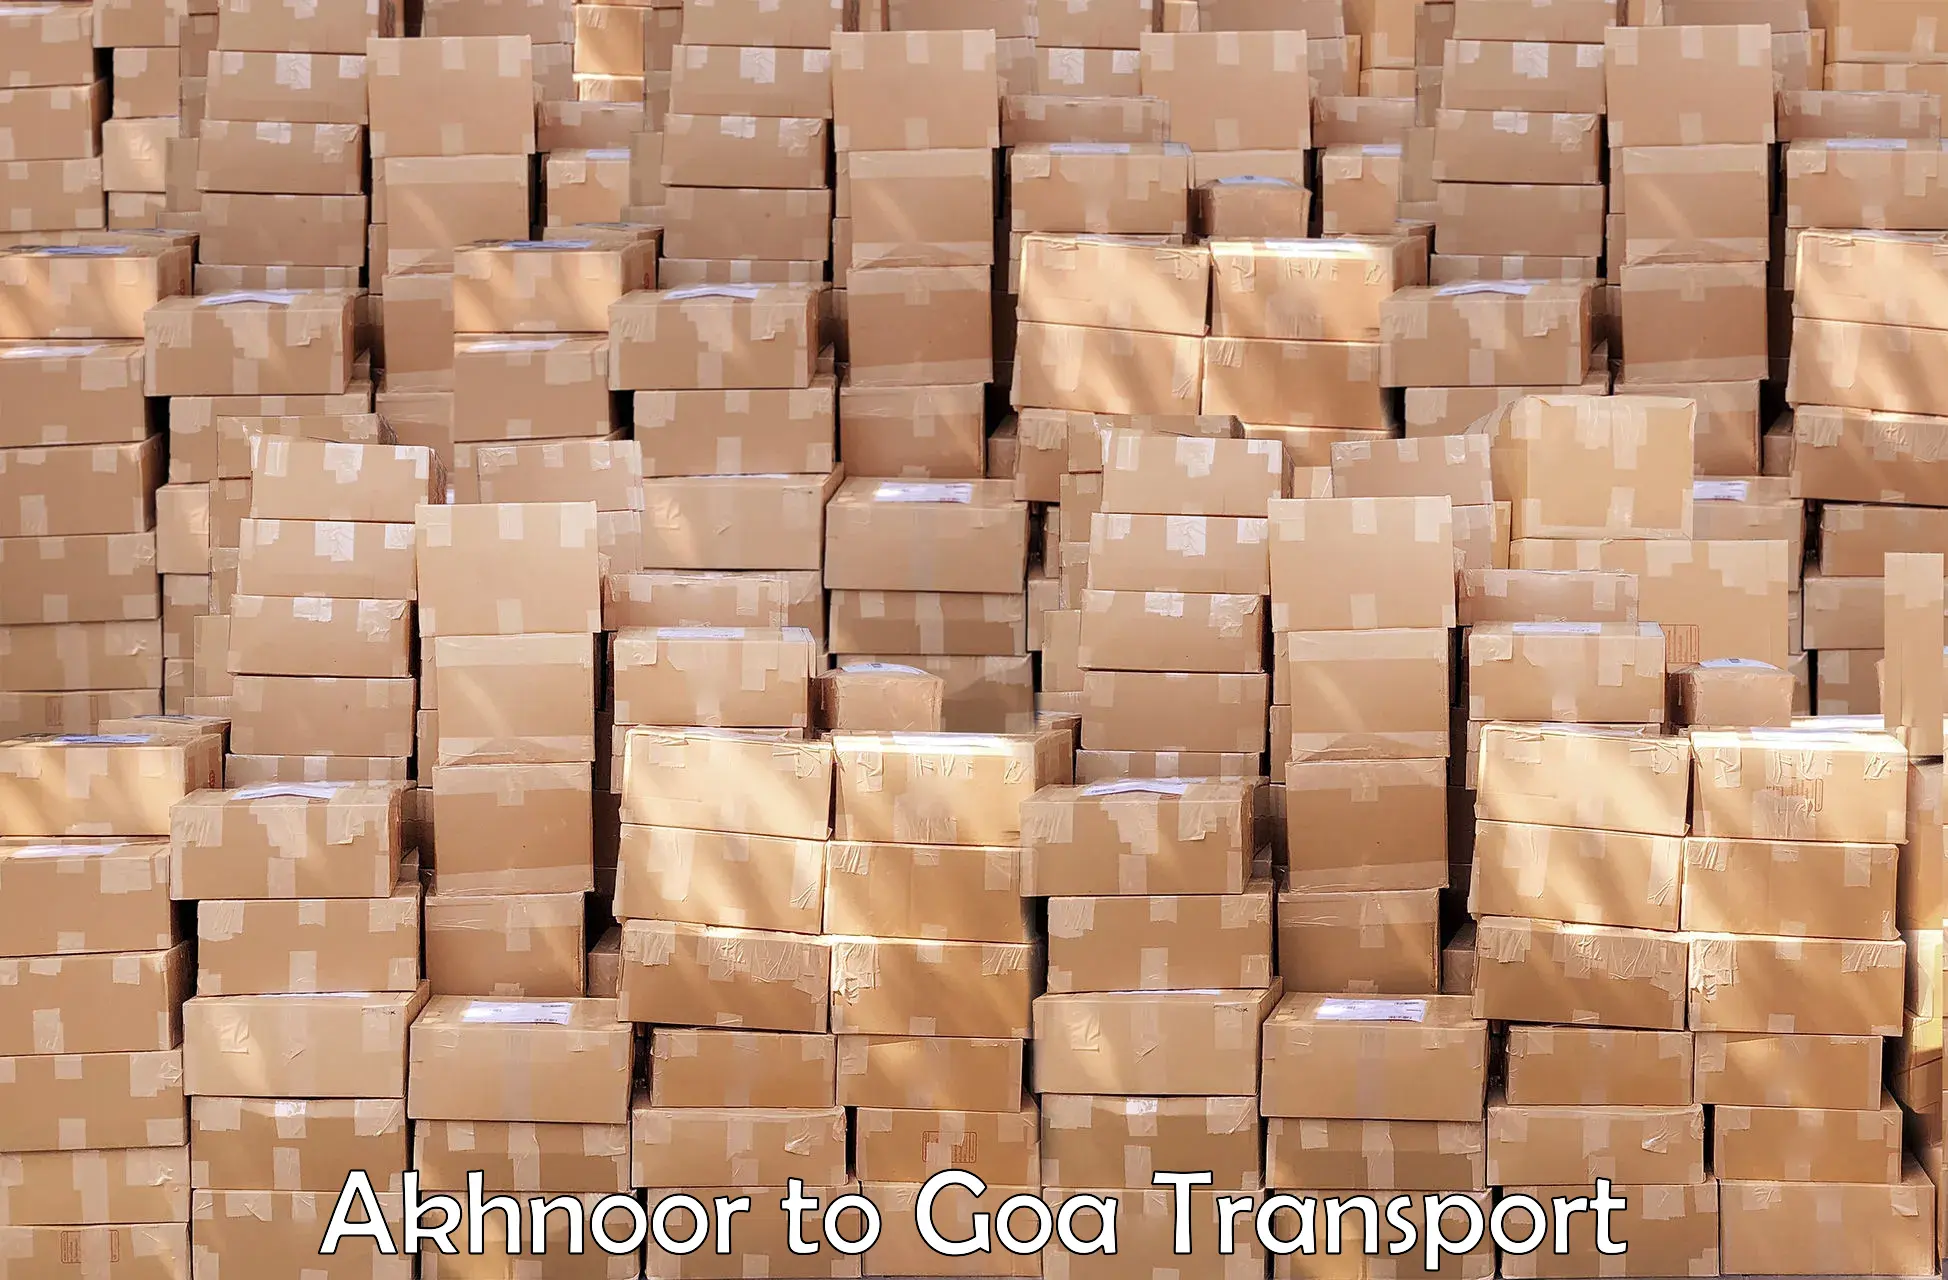 Pick up transport service Akhnoor to IIT Goa